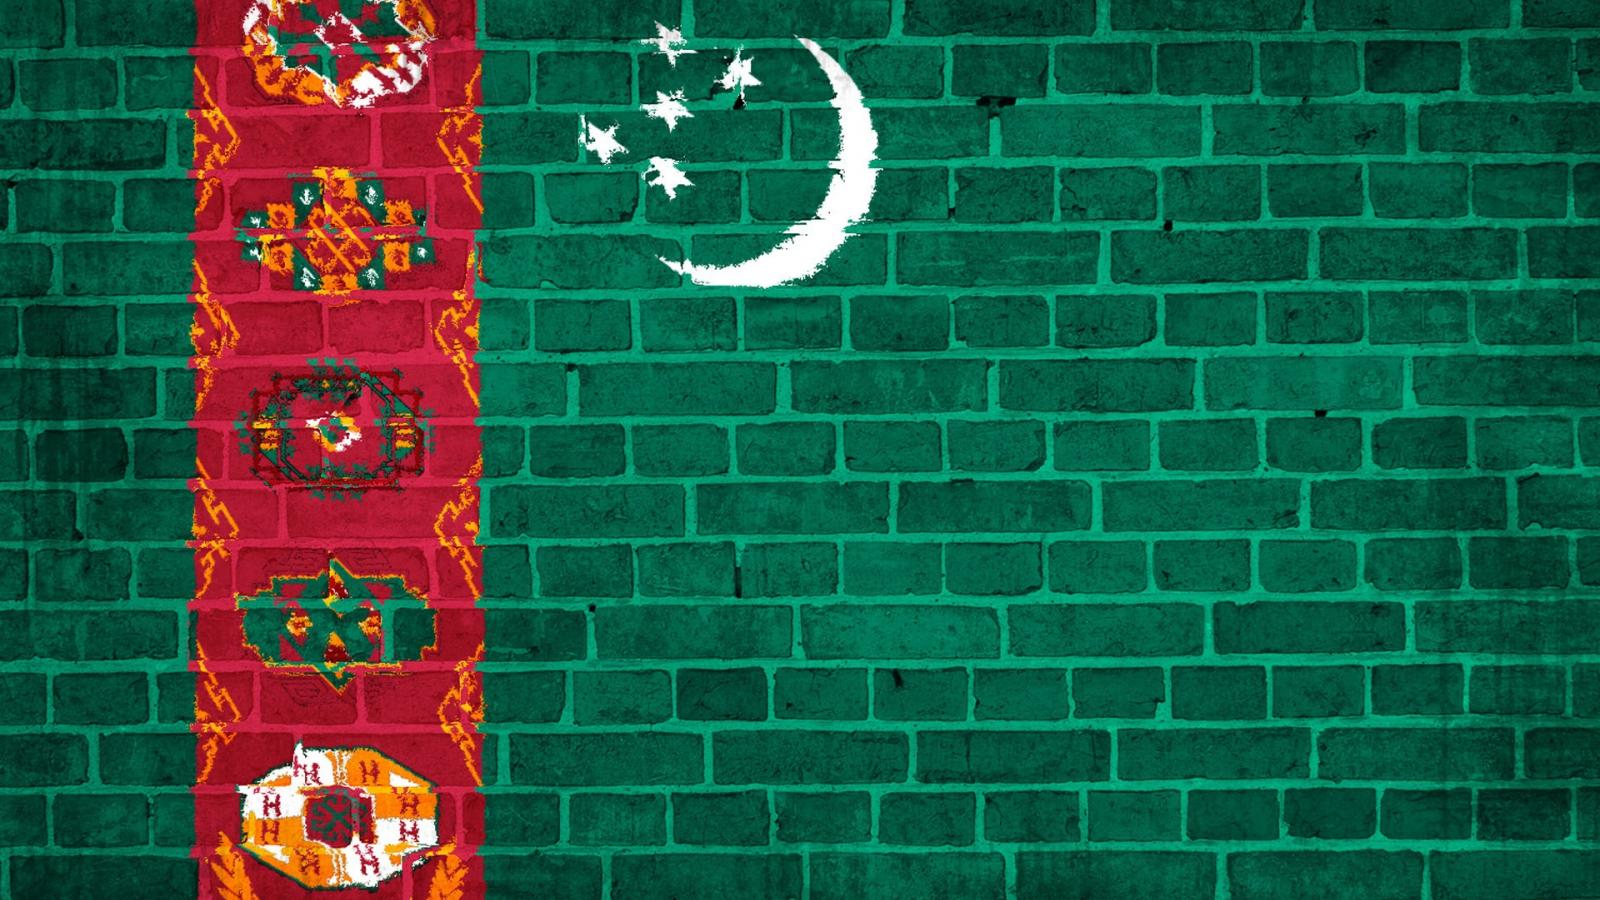 電話スクリーンに最適なトルクメニスタンの国旗の壁紙